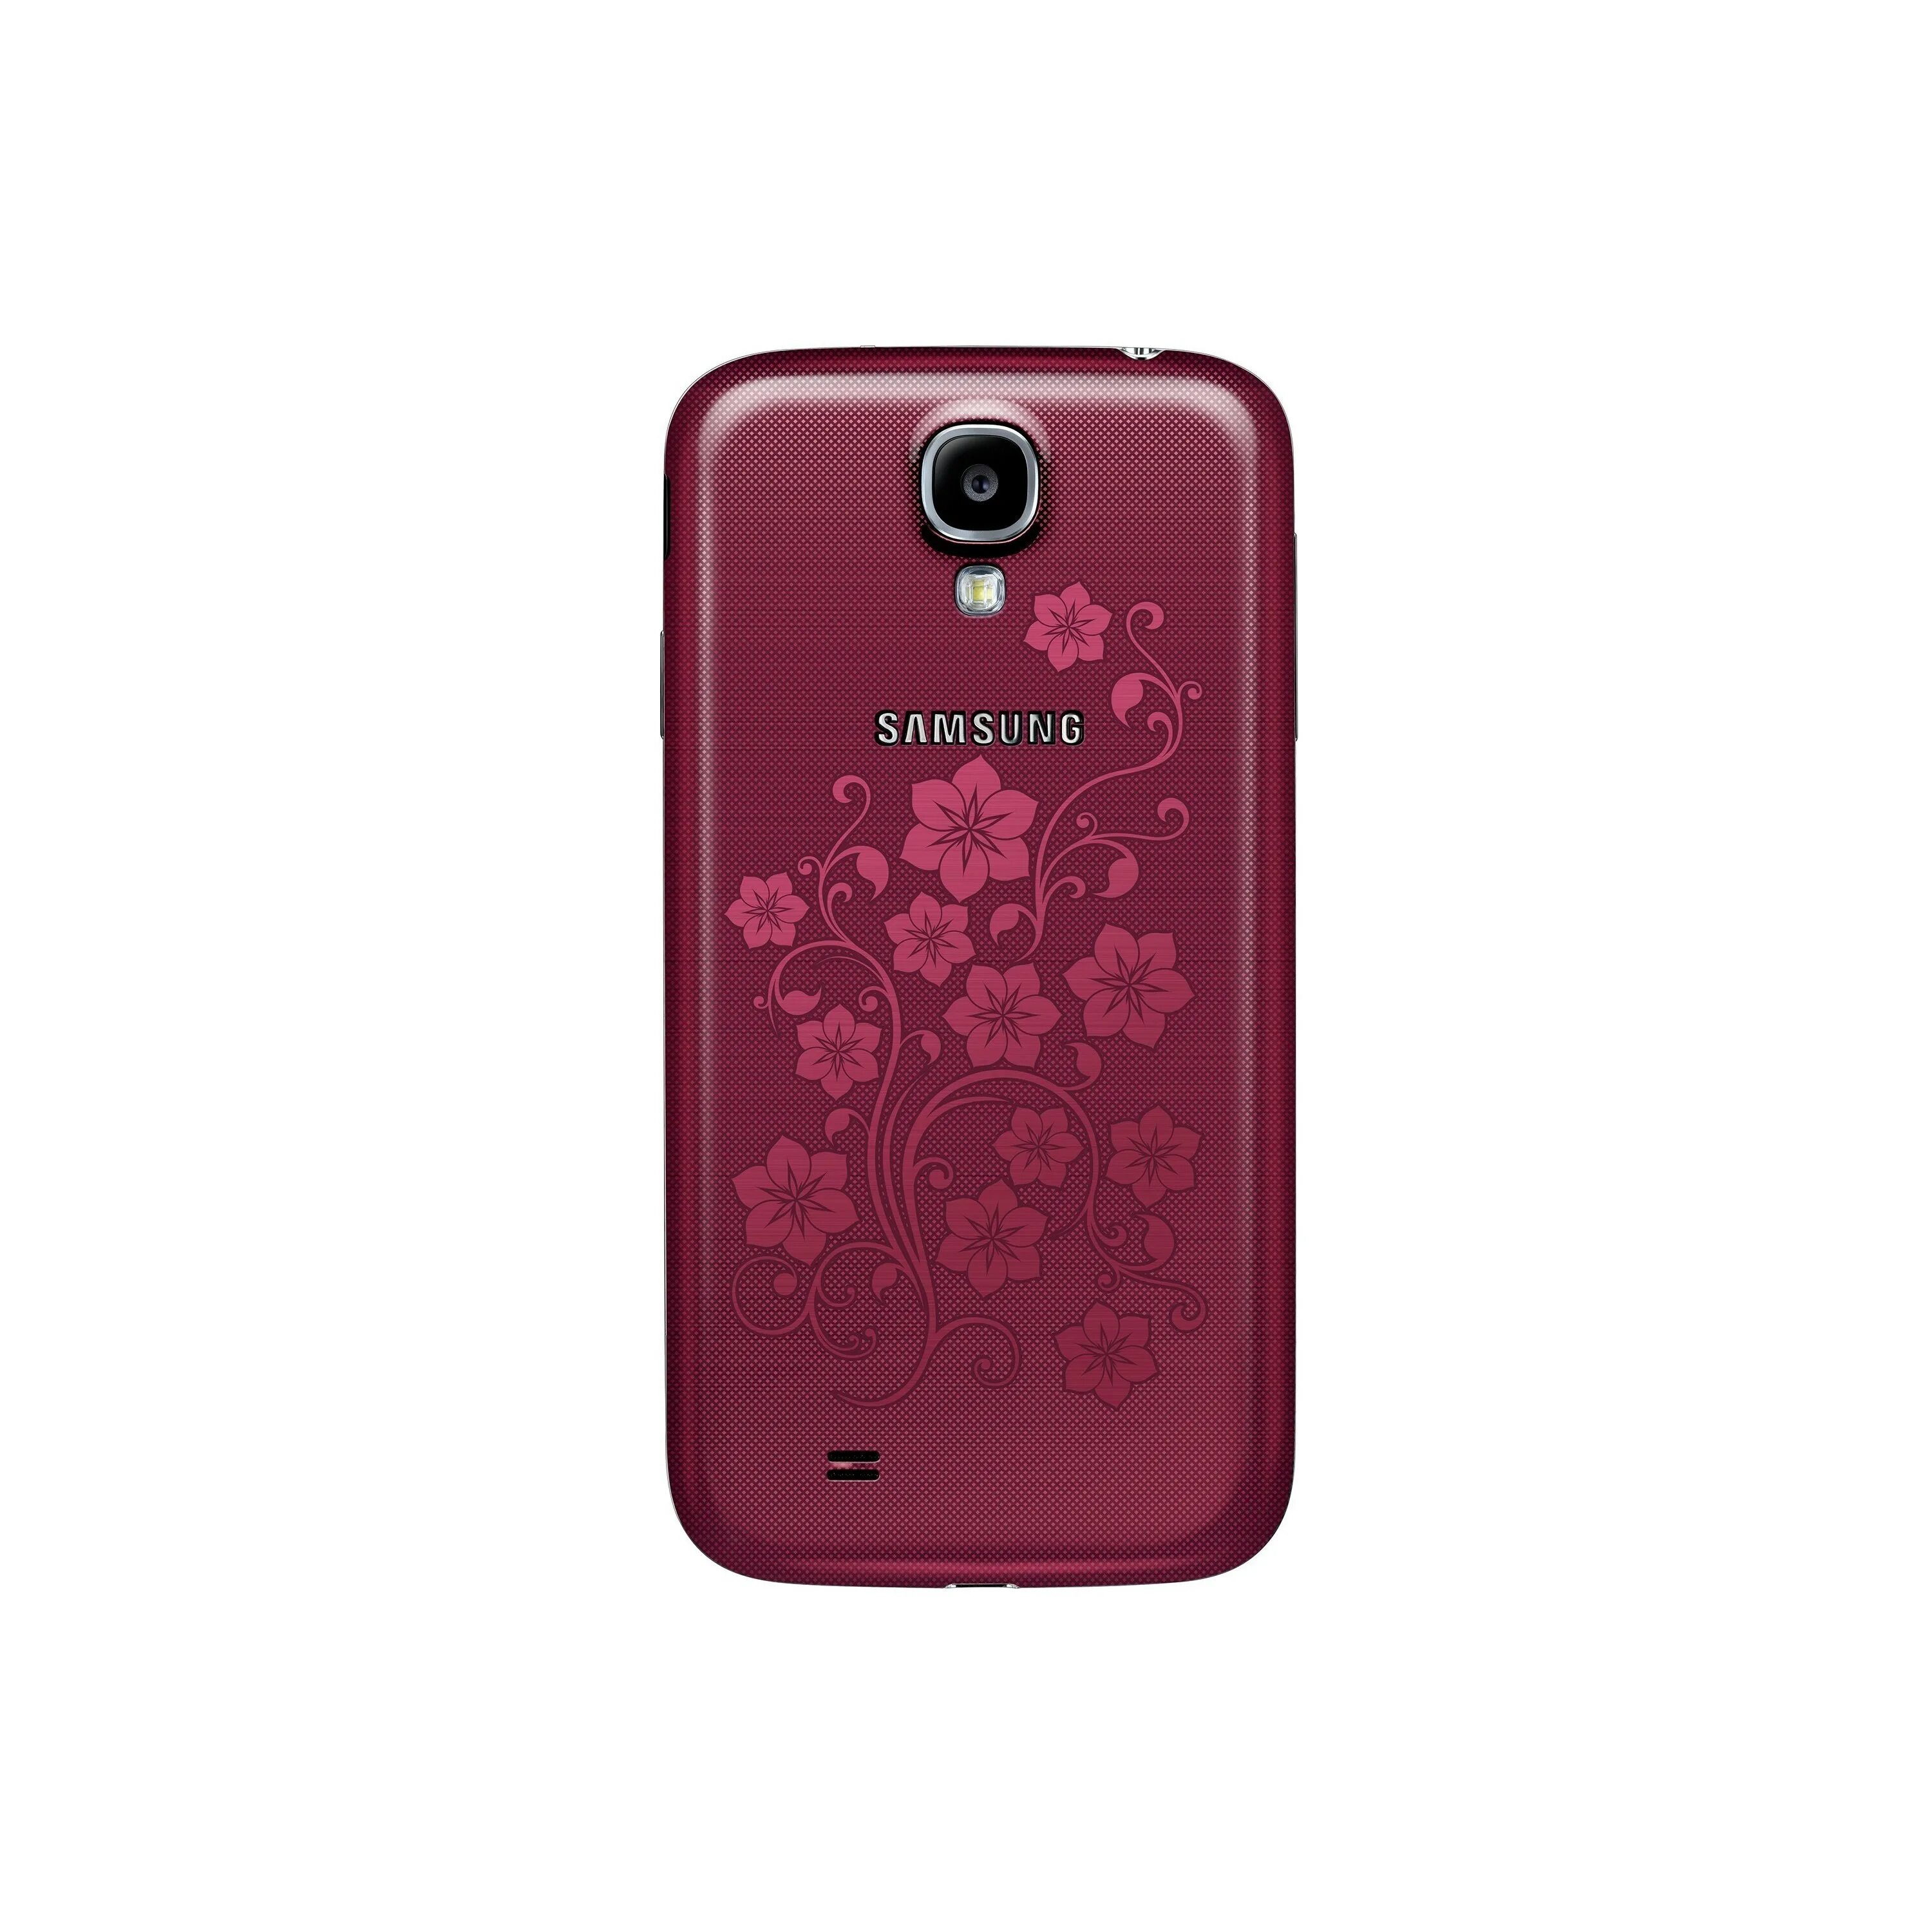 Samsung Galaxy s4 la fleur. Samsung s4 Mini la fleur. Samsung Galaxy la fleur s4 Duos. Samsung la fleur gt. Самсунг la fleur